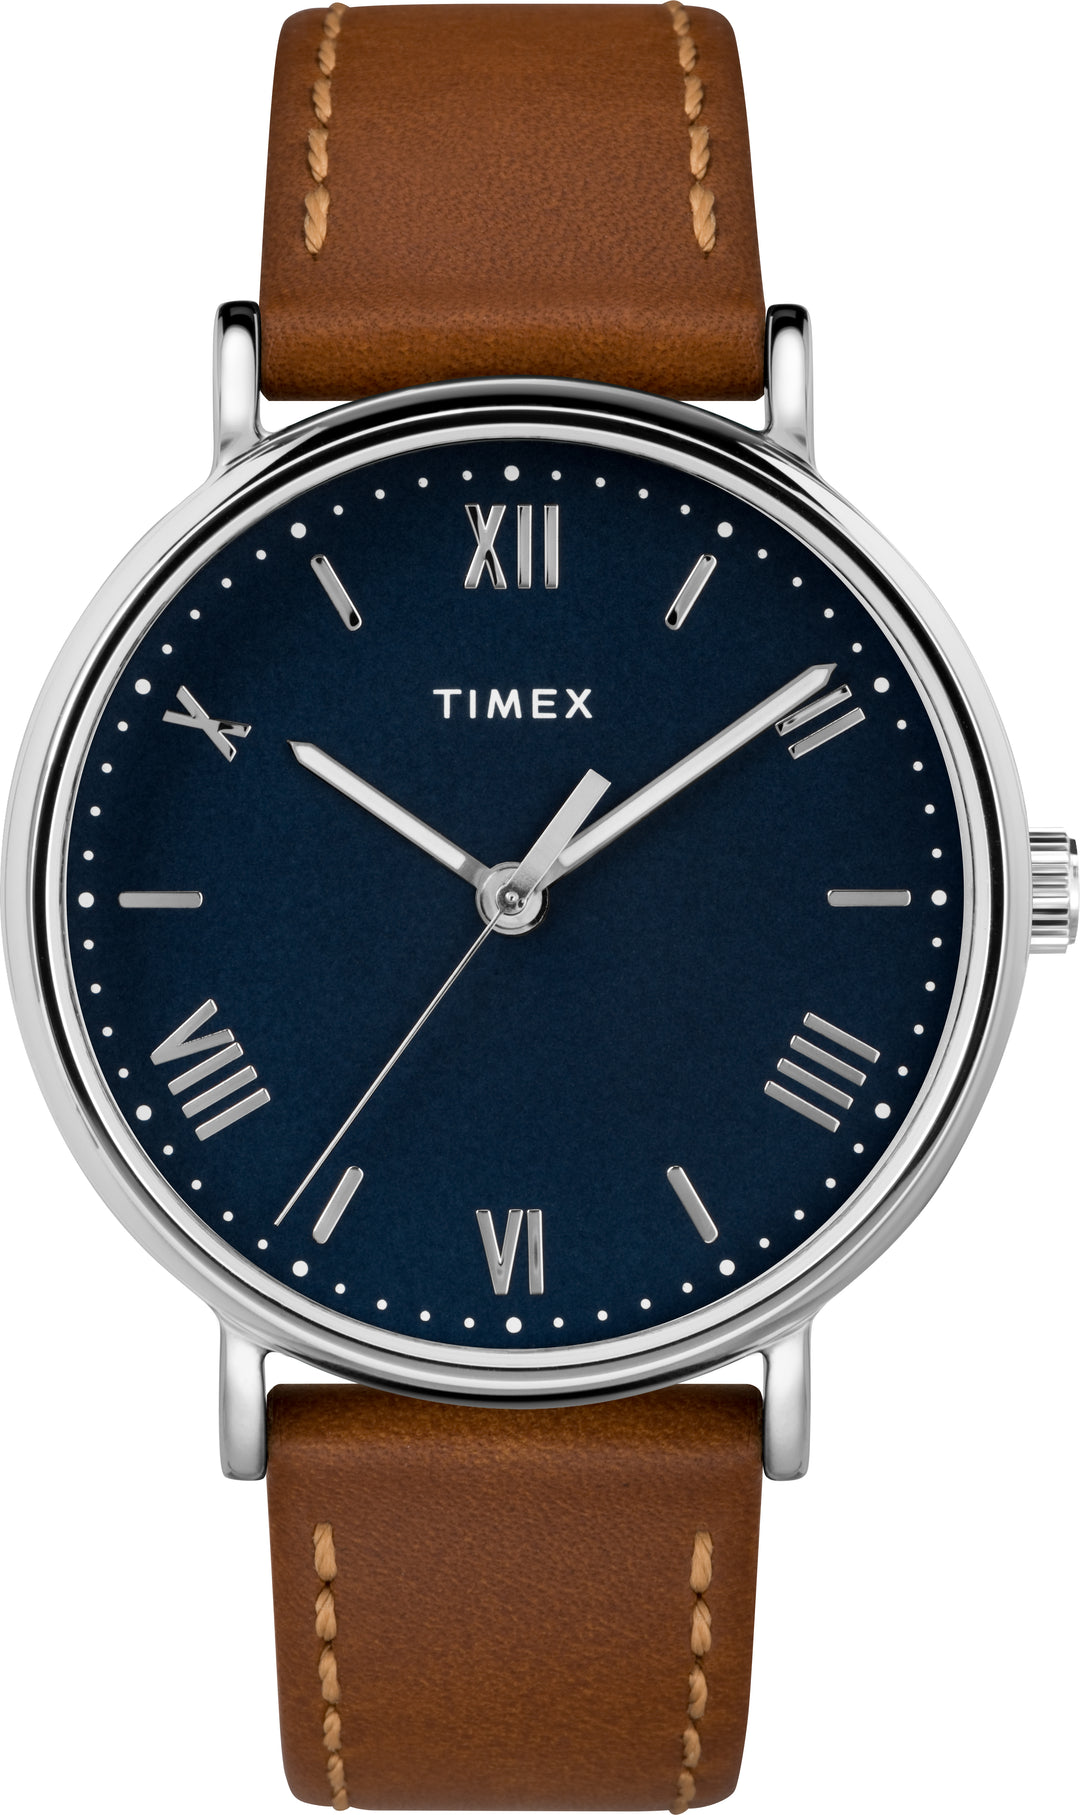 Timex Dress Analog Watch